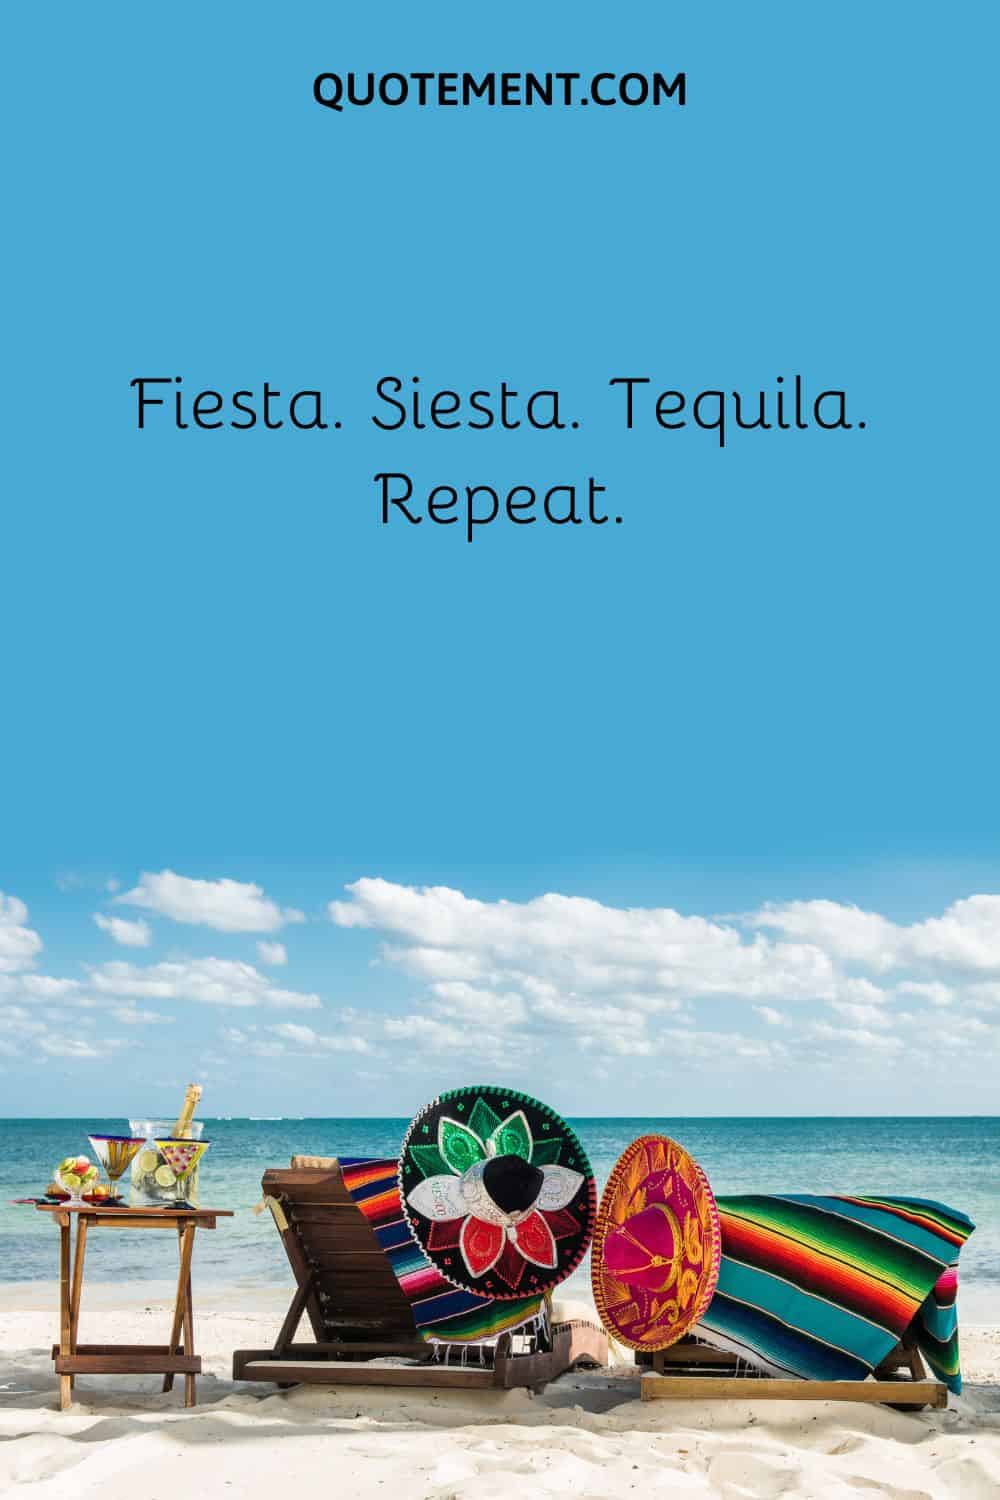 Fiesta. Siesta. Tequila. Repeat